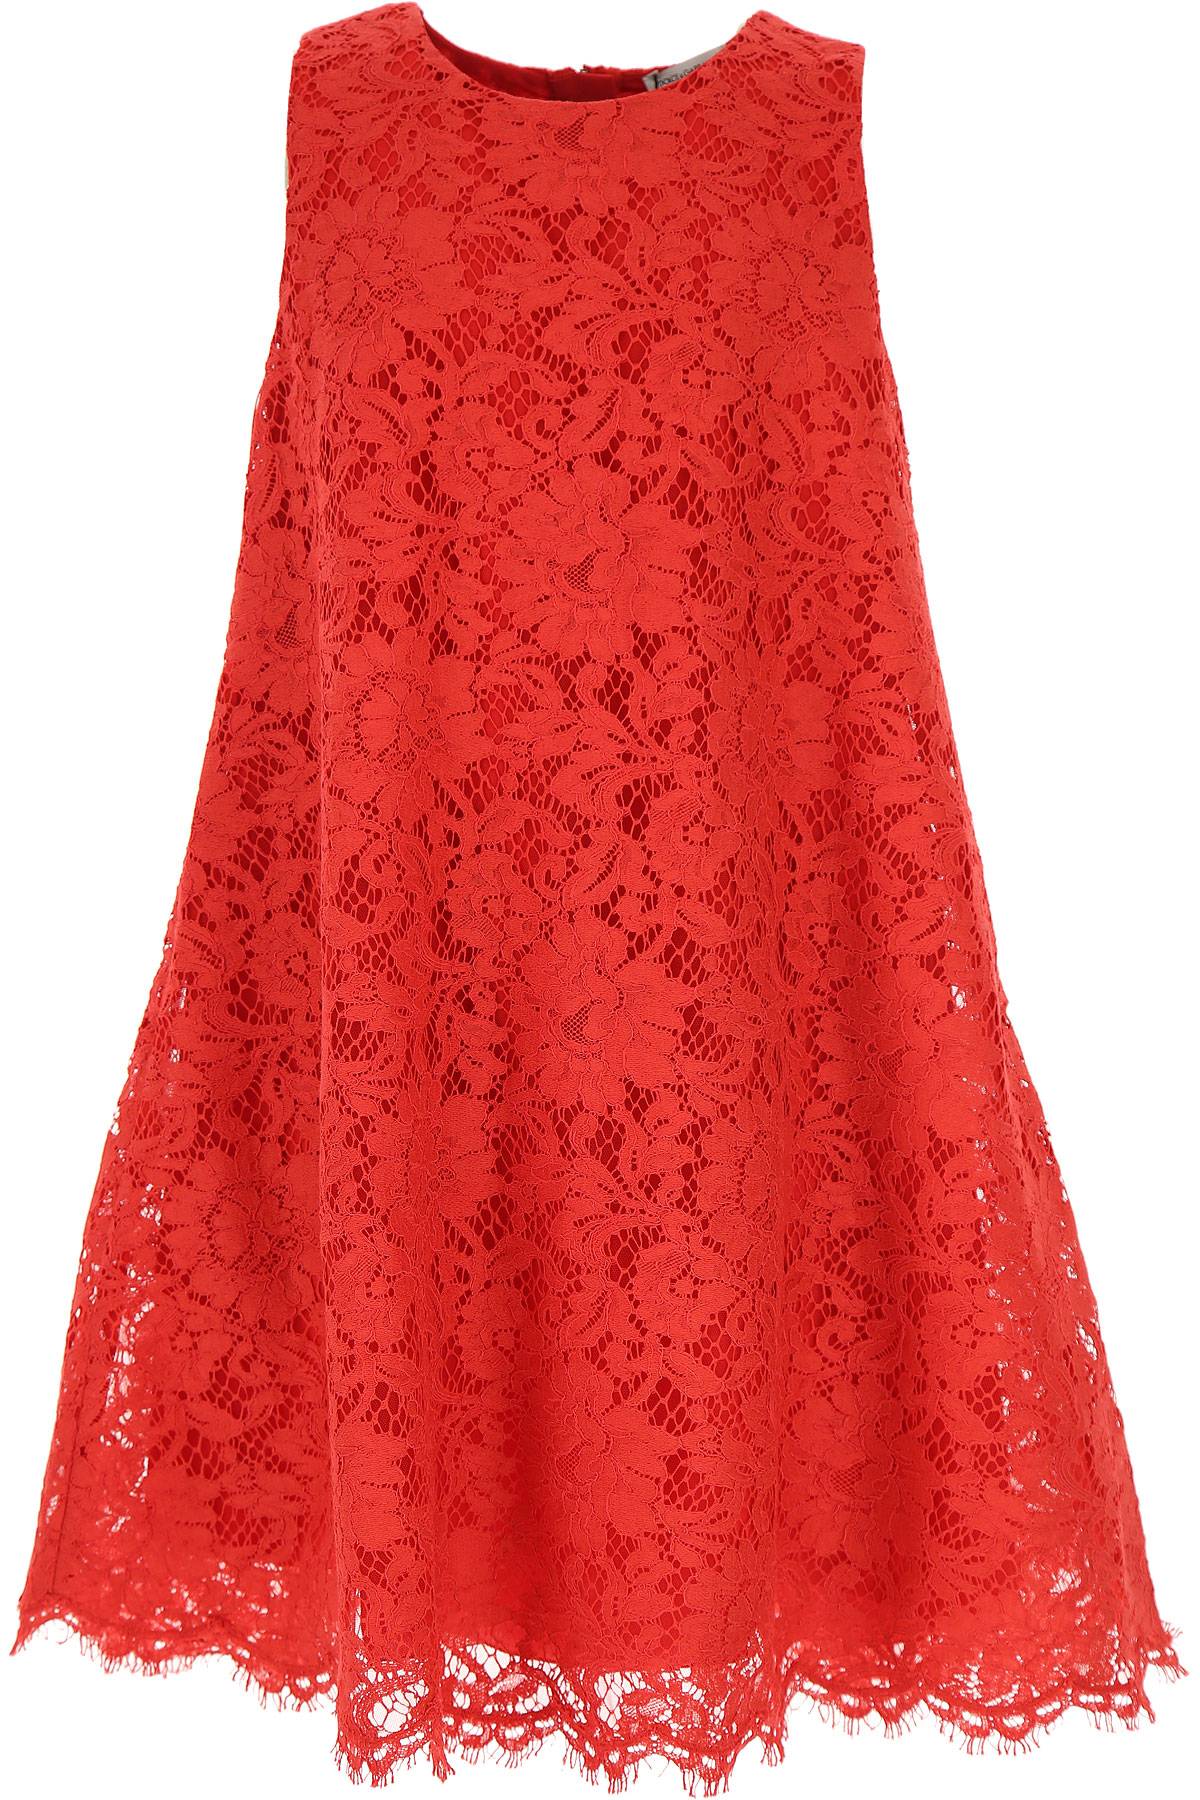 Dolce & Gabbana Kleid für Mädchen Günstig im Sale, Rot, Baumwolle, 2017, 10Y 2Y 3Y 4Y 6Y 8Y